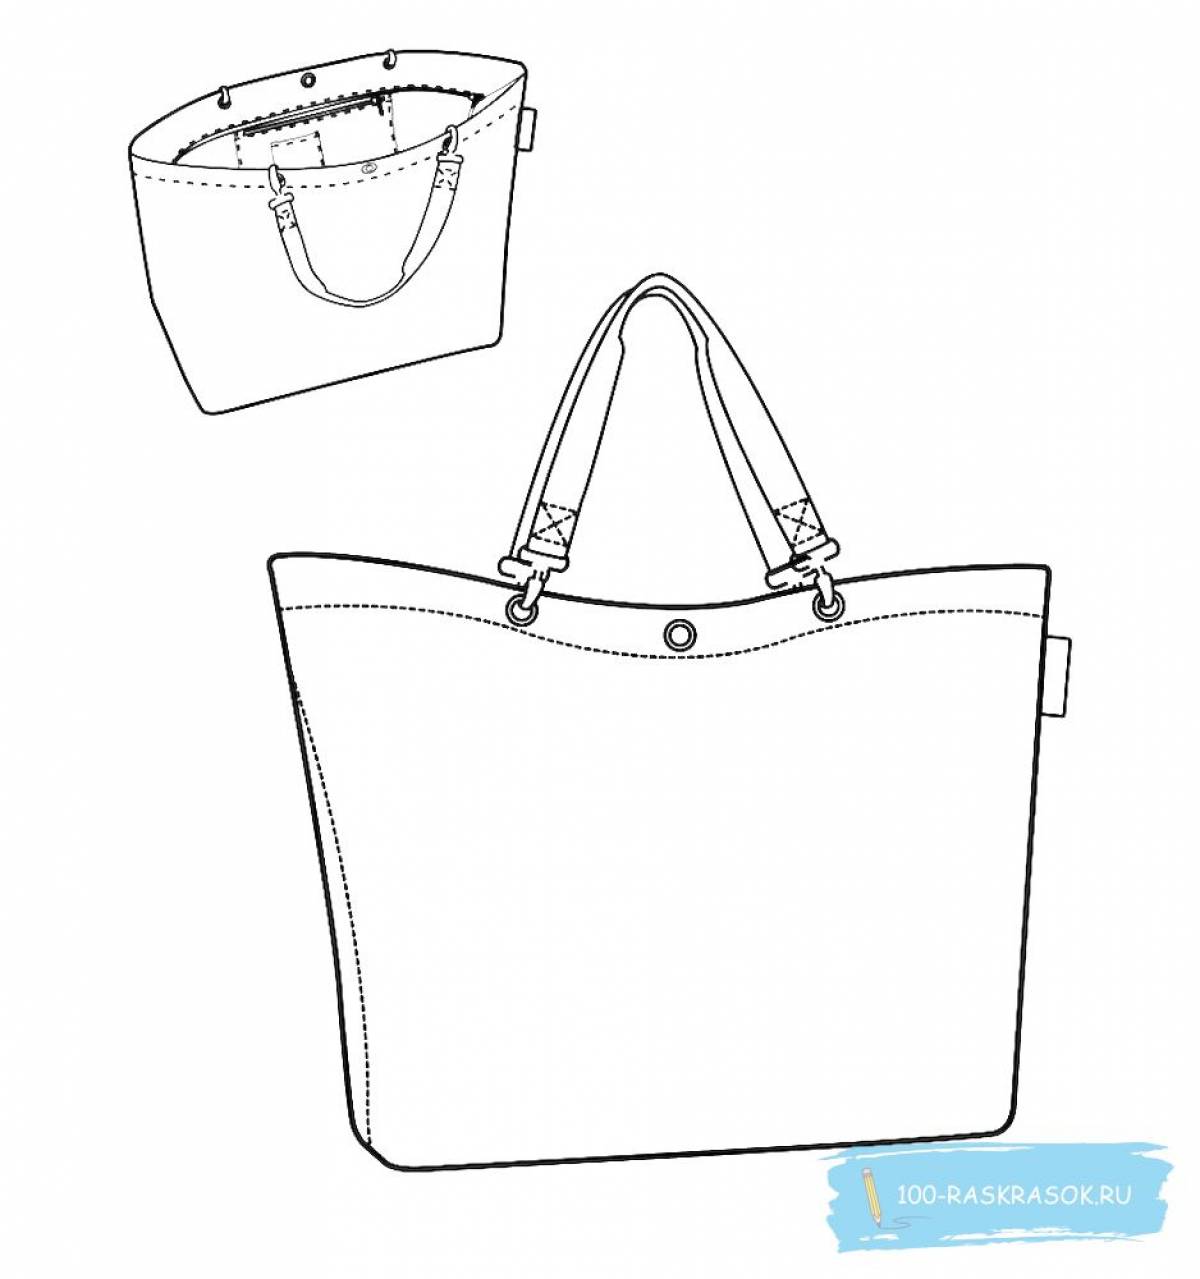 Shopper bag #3